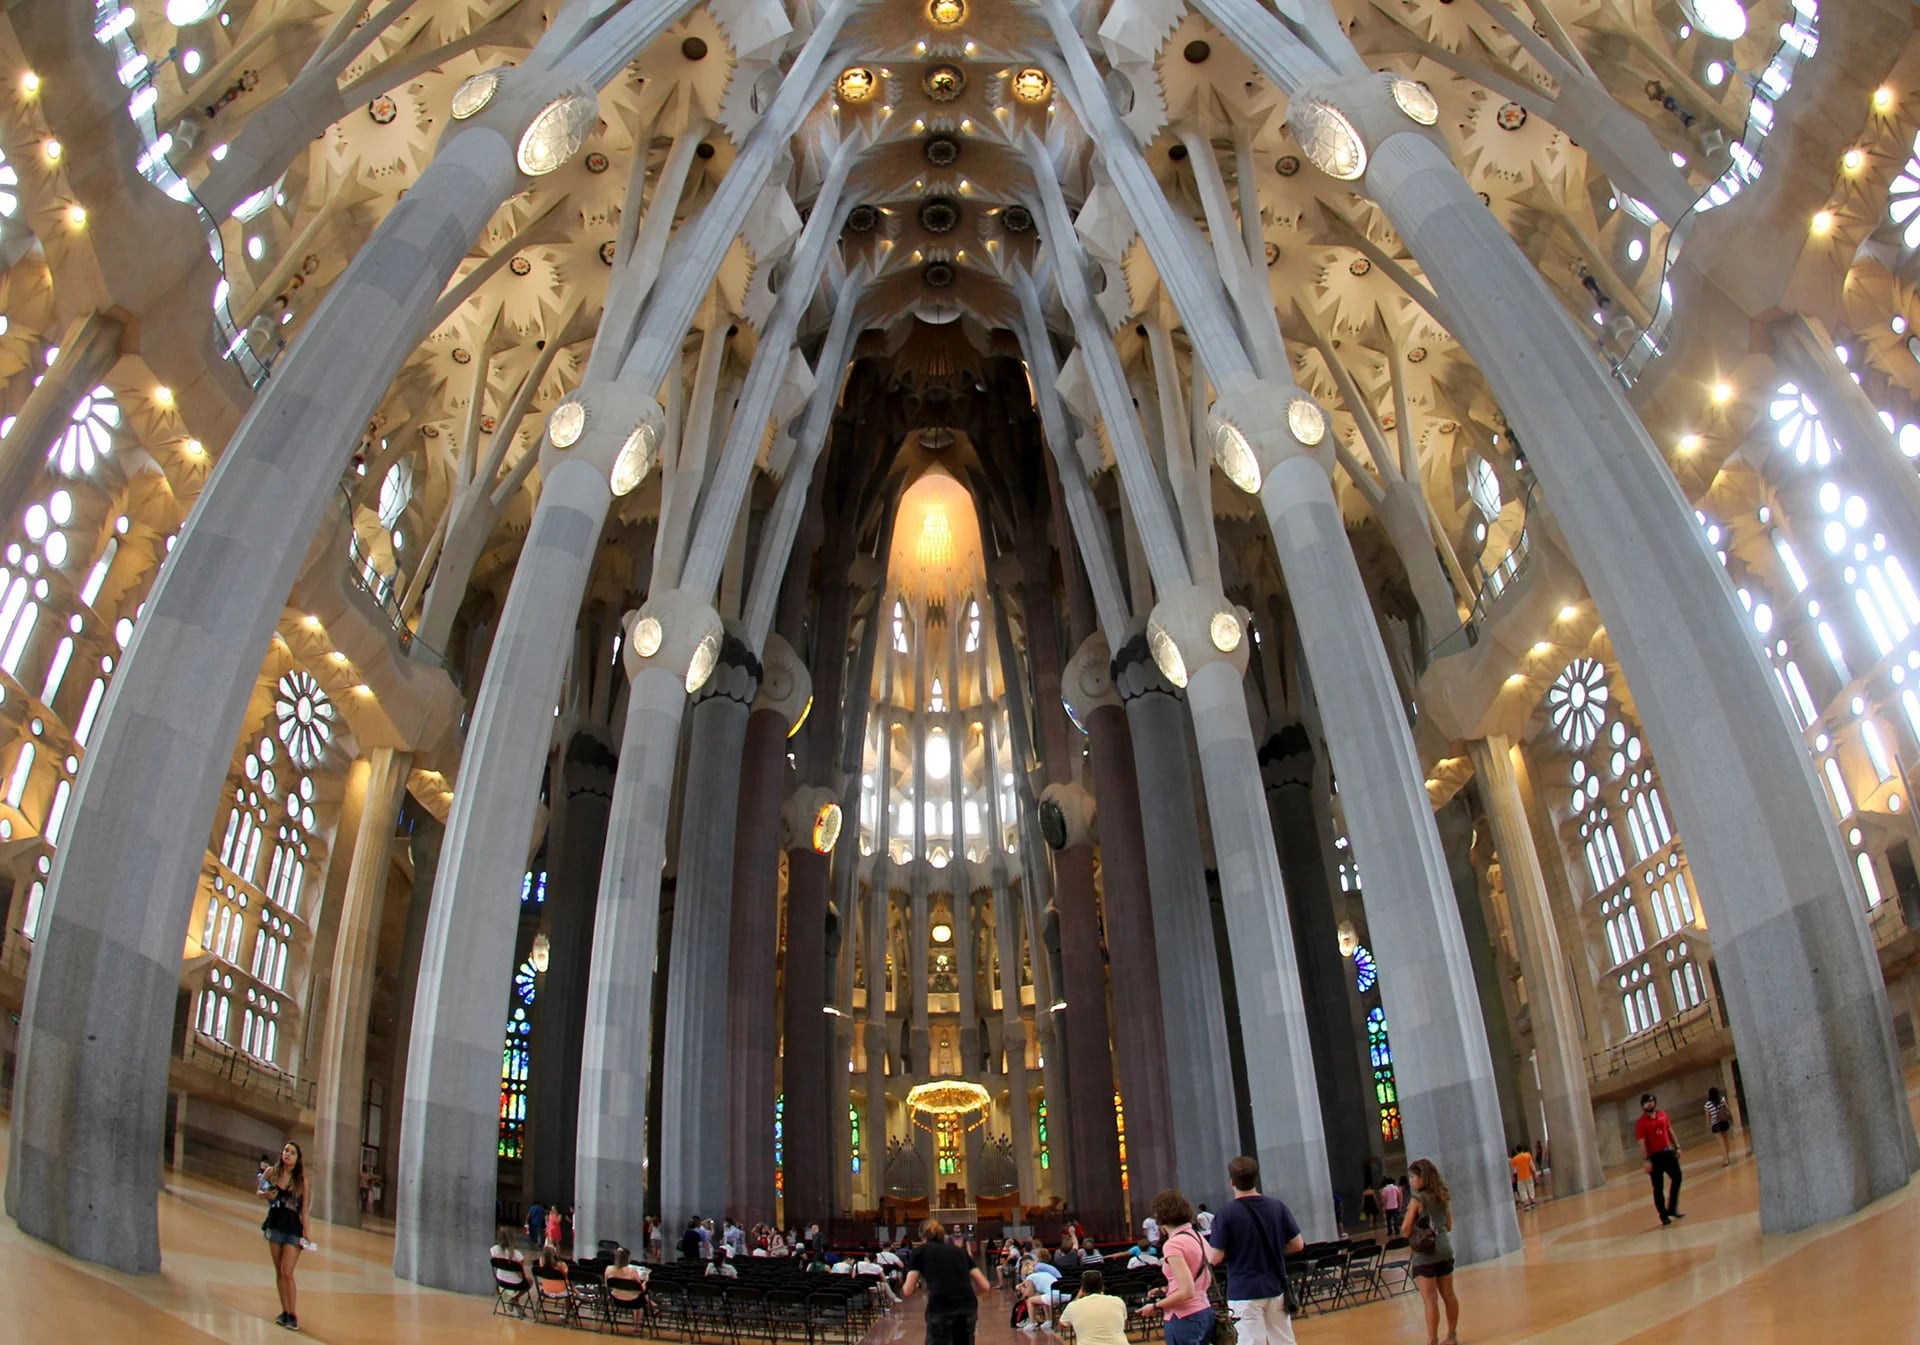 Las columnas arborescentes, además de su función estructural, reflejan la idea de Gaudí de que el interior del templo tenía que ser como un bosque que invitara a la oración, y que fuera adecuado para la celebración eucarística